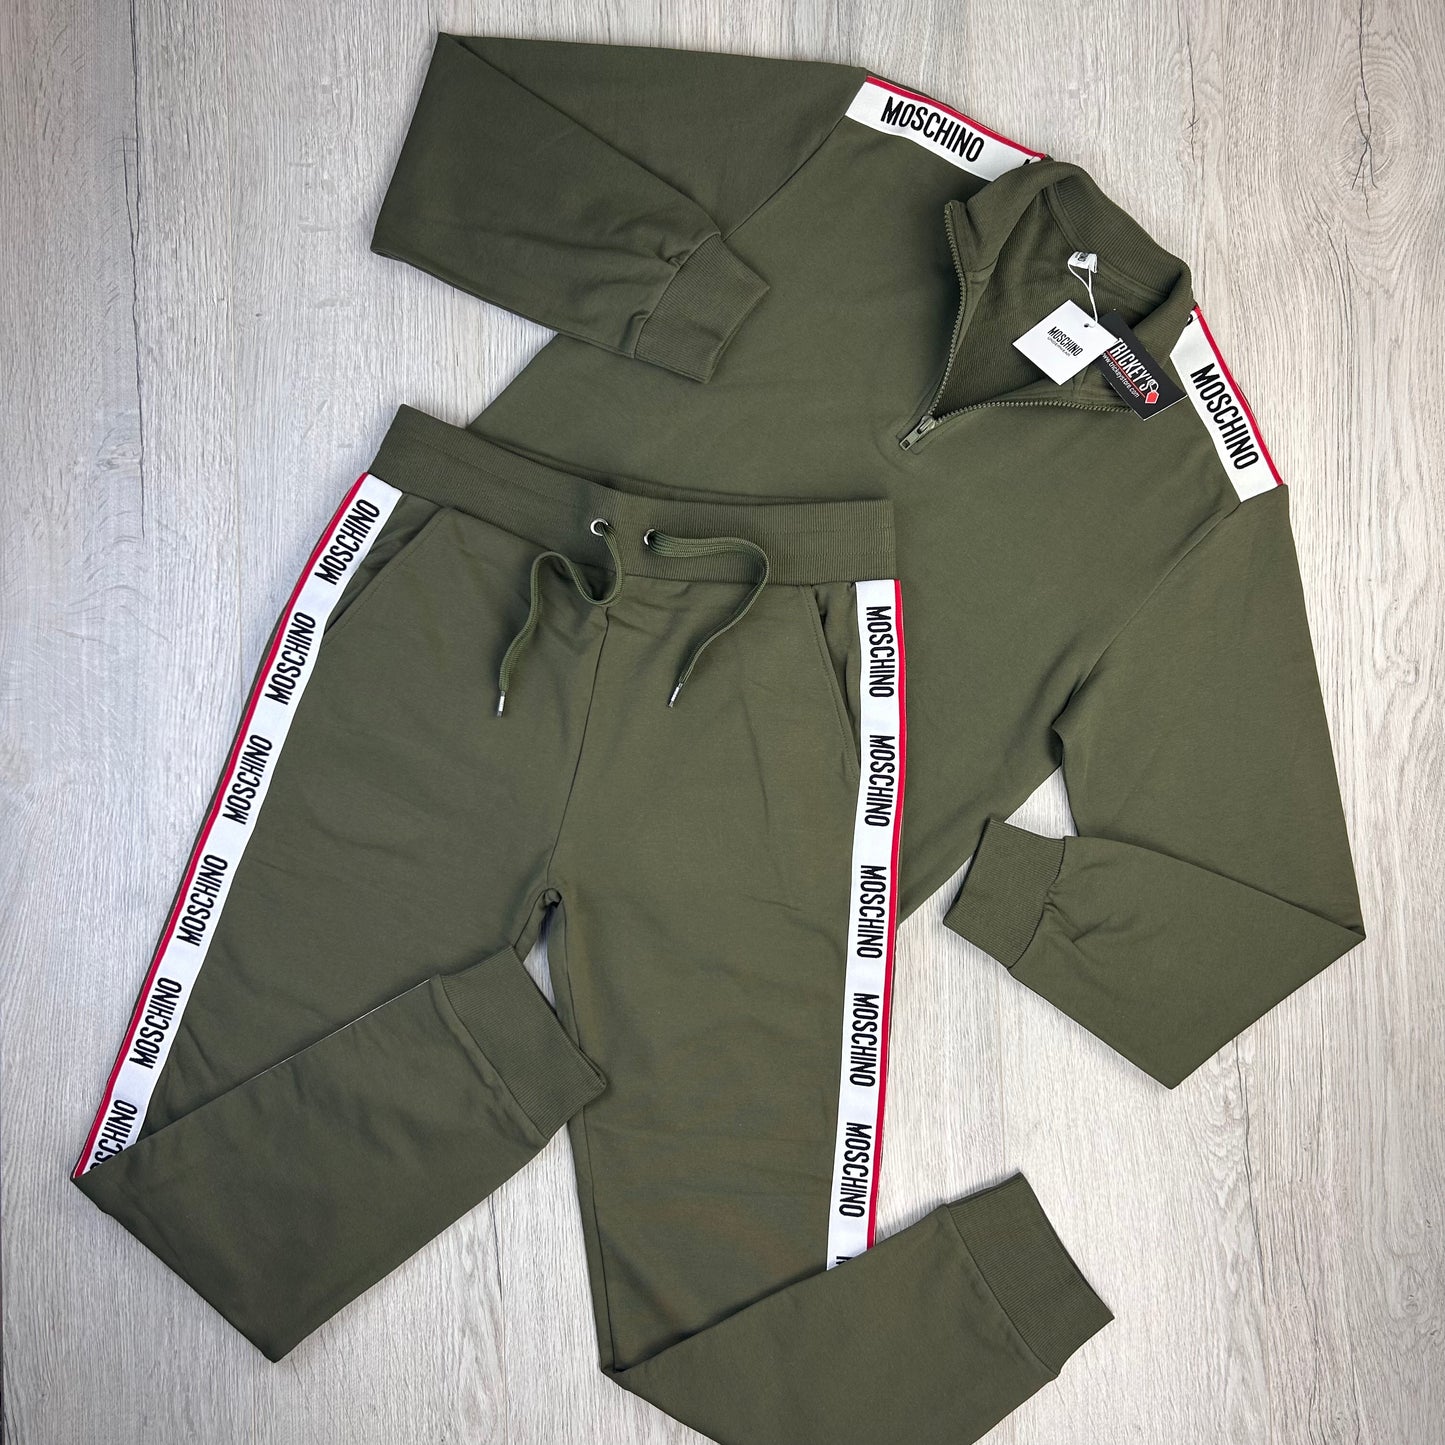 Moschino Men’s Khaki Green 1/4 Zip Full Tracksuit